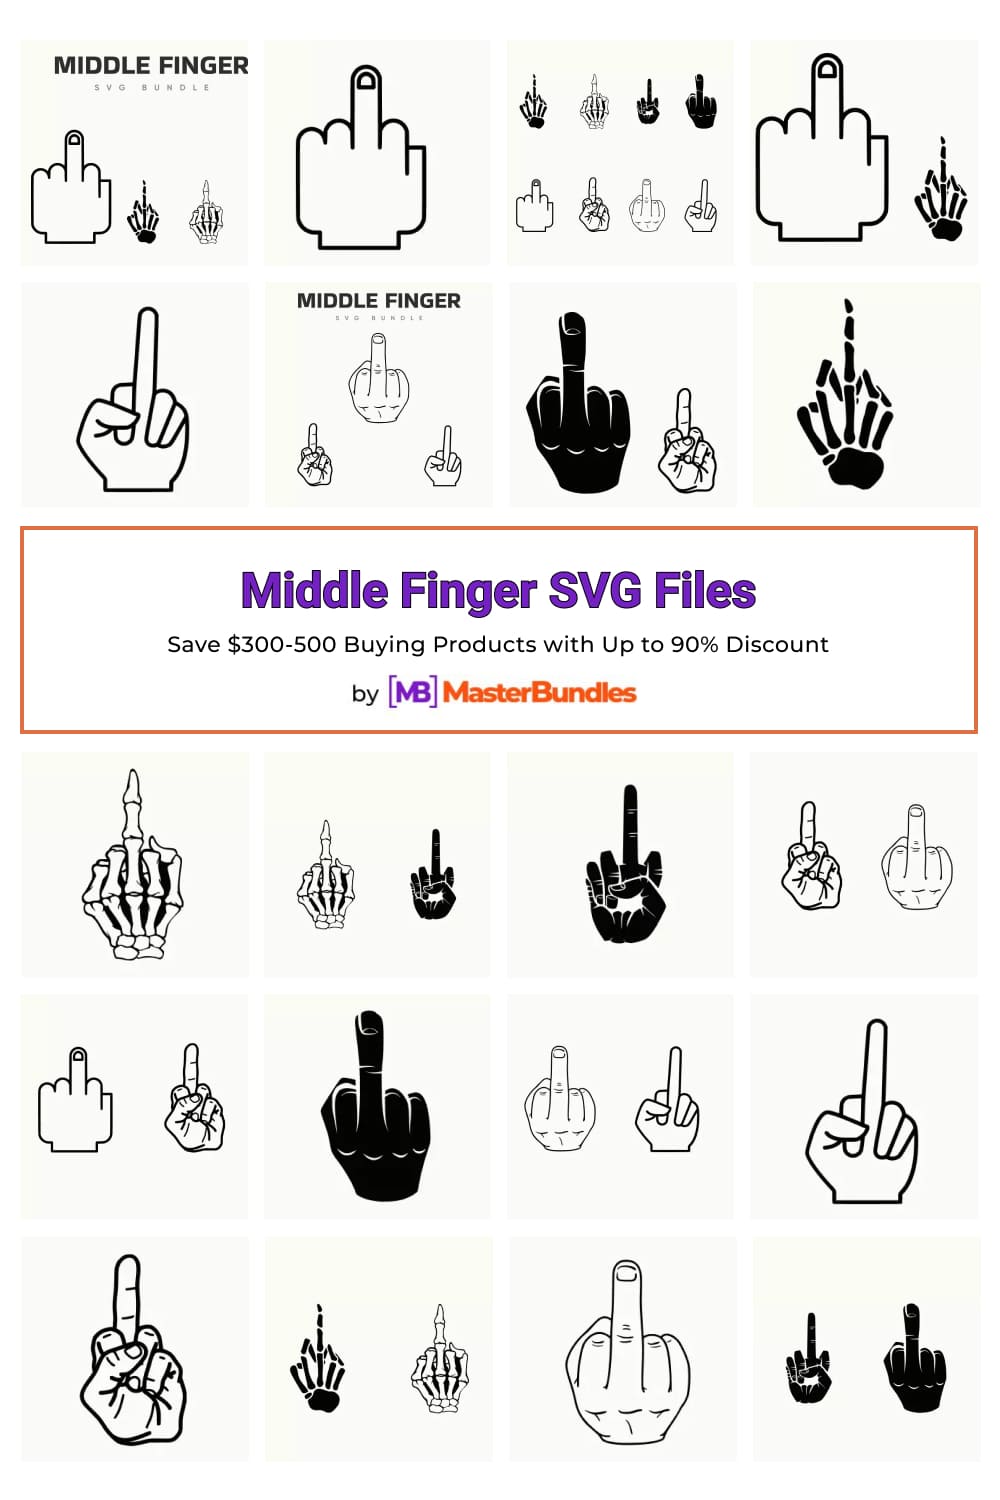 Middle Finger SVG Files Pinterest image.